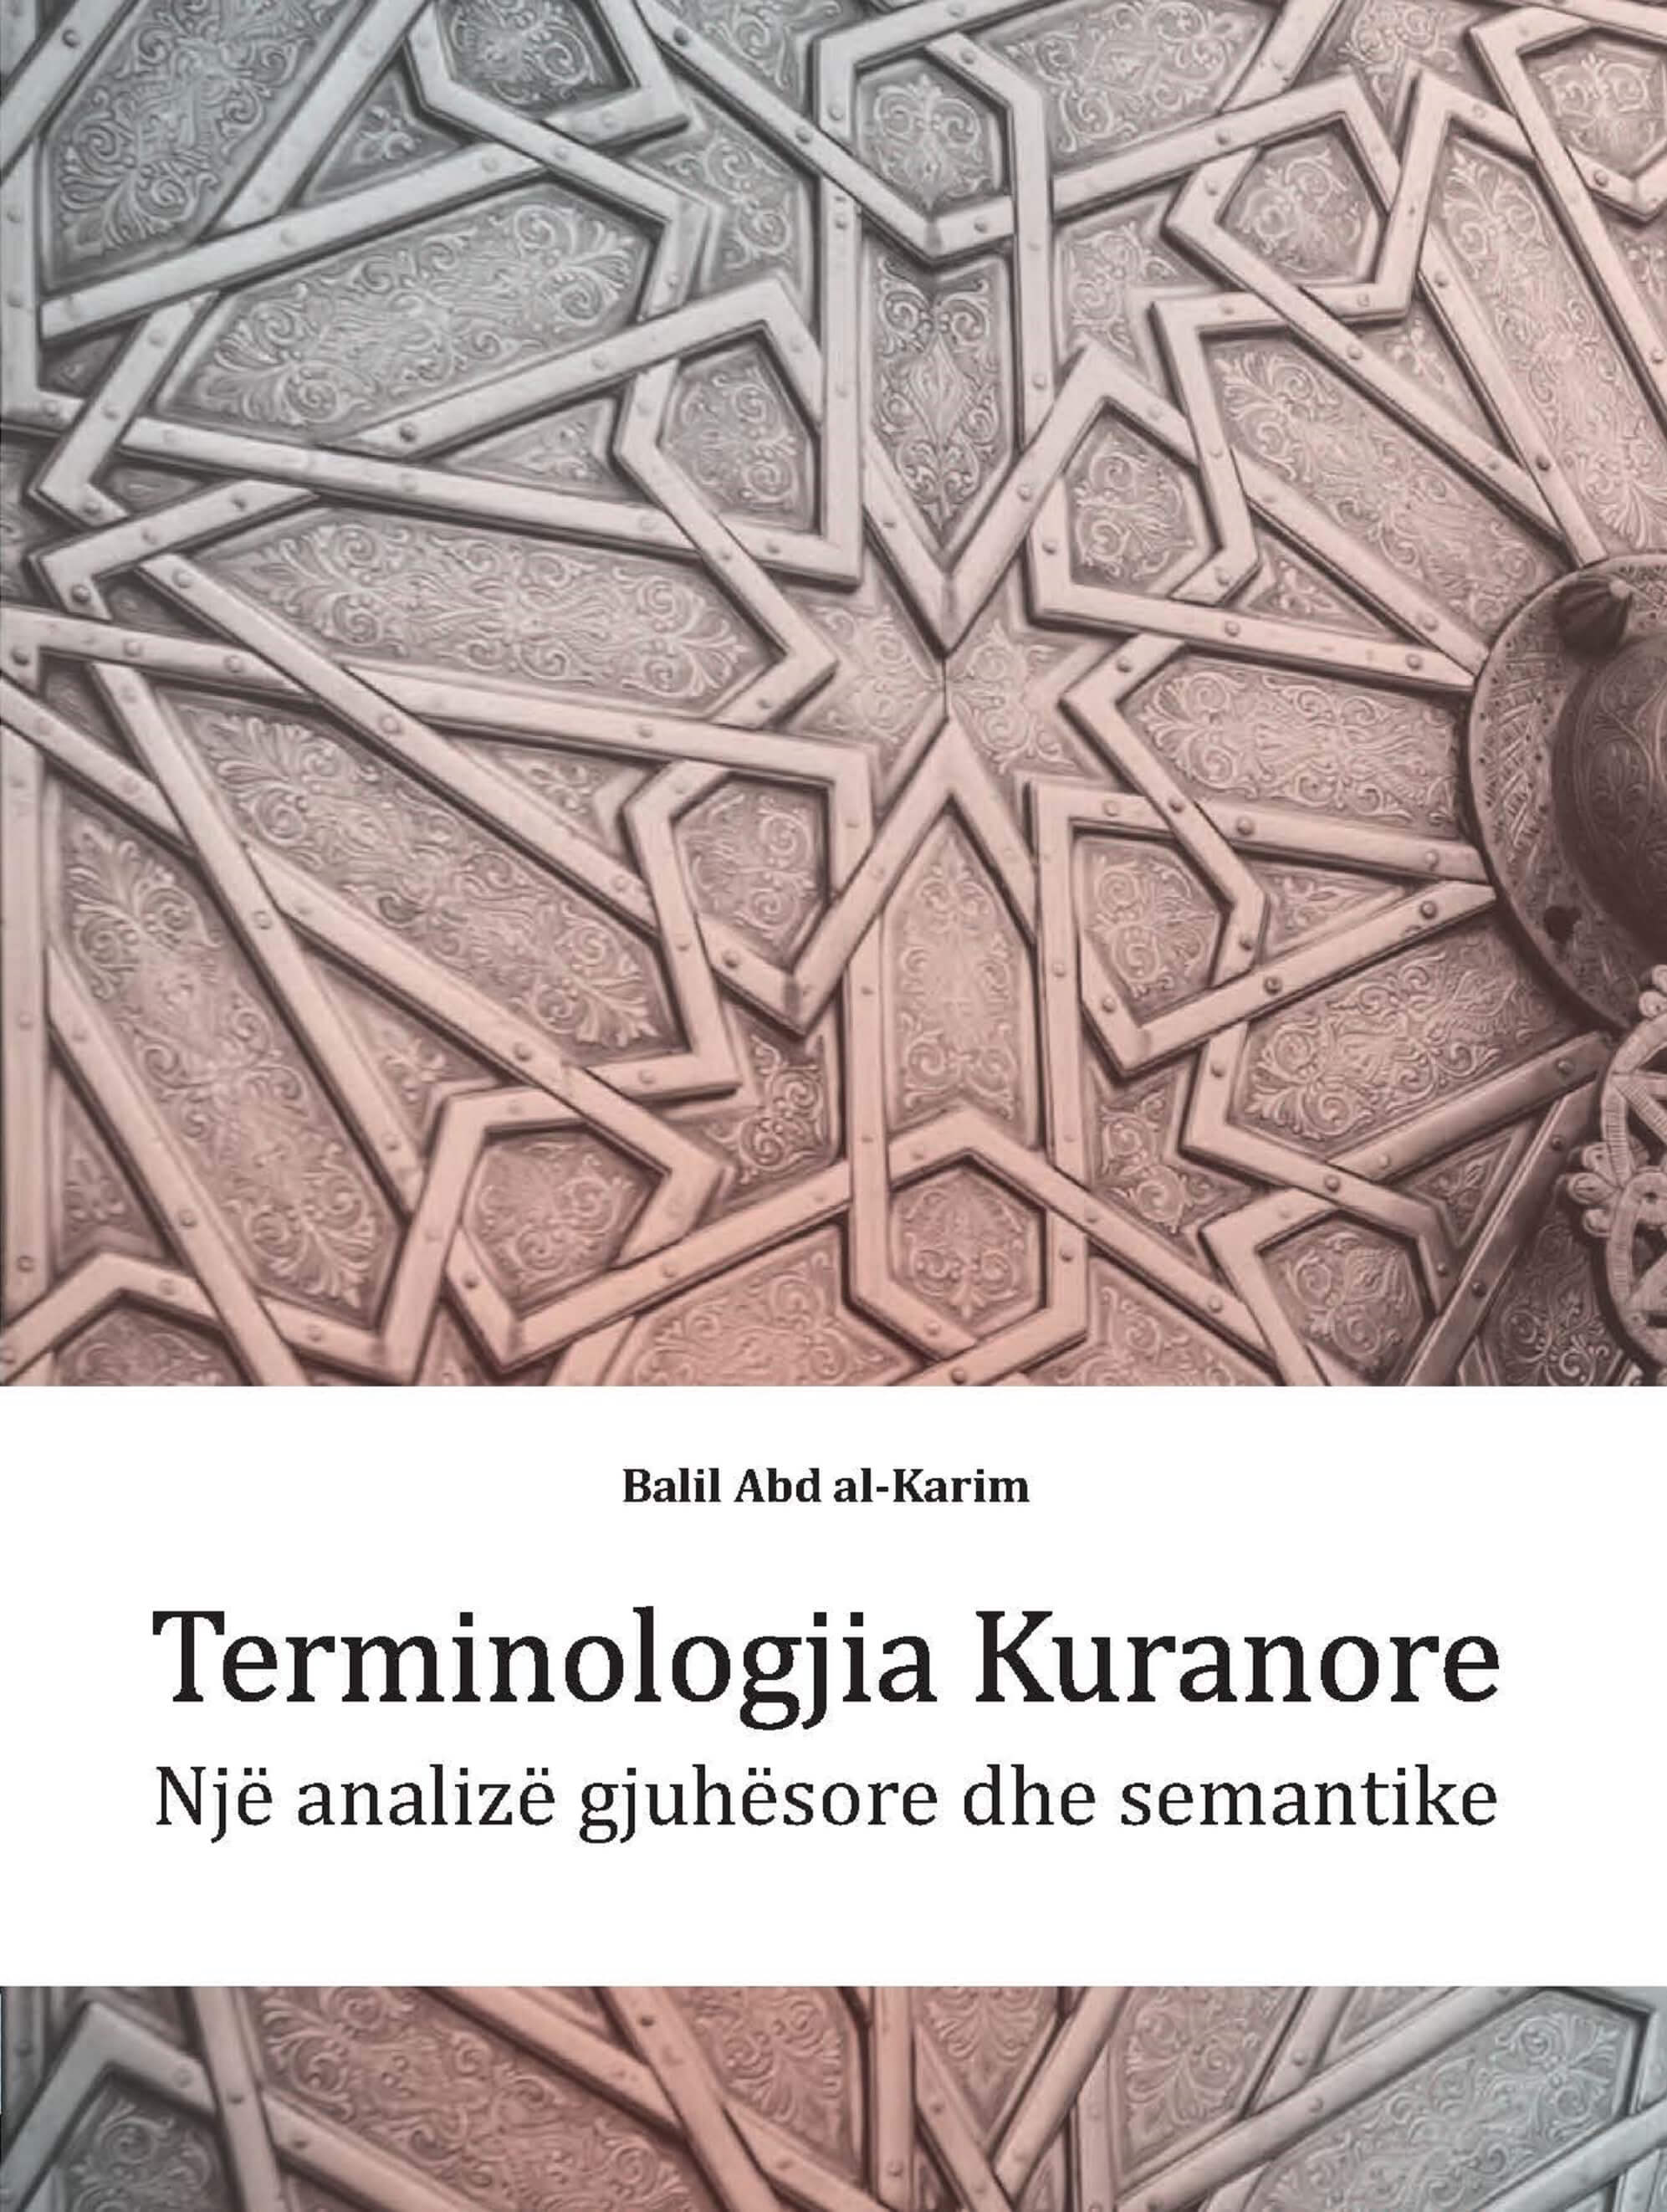 Albanian: Terminologjia Kuranore: Një analizë gjuhësore dhe semantike (Qur’anic Terminology: A Linguistic and Semantic Analysis)